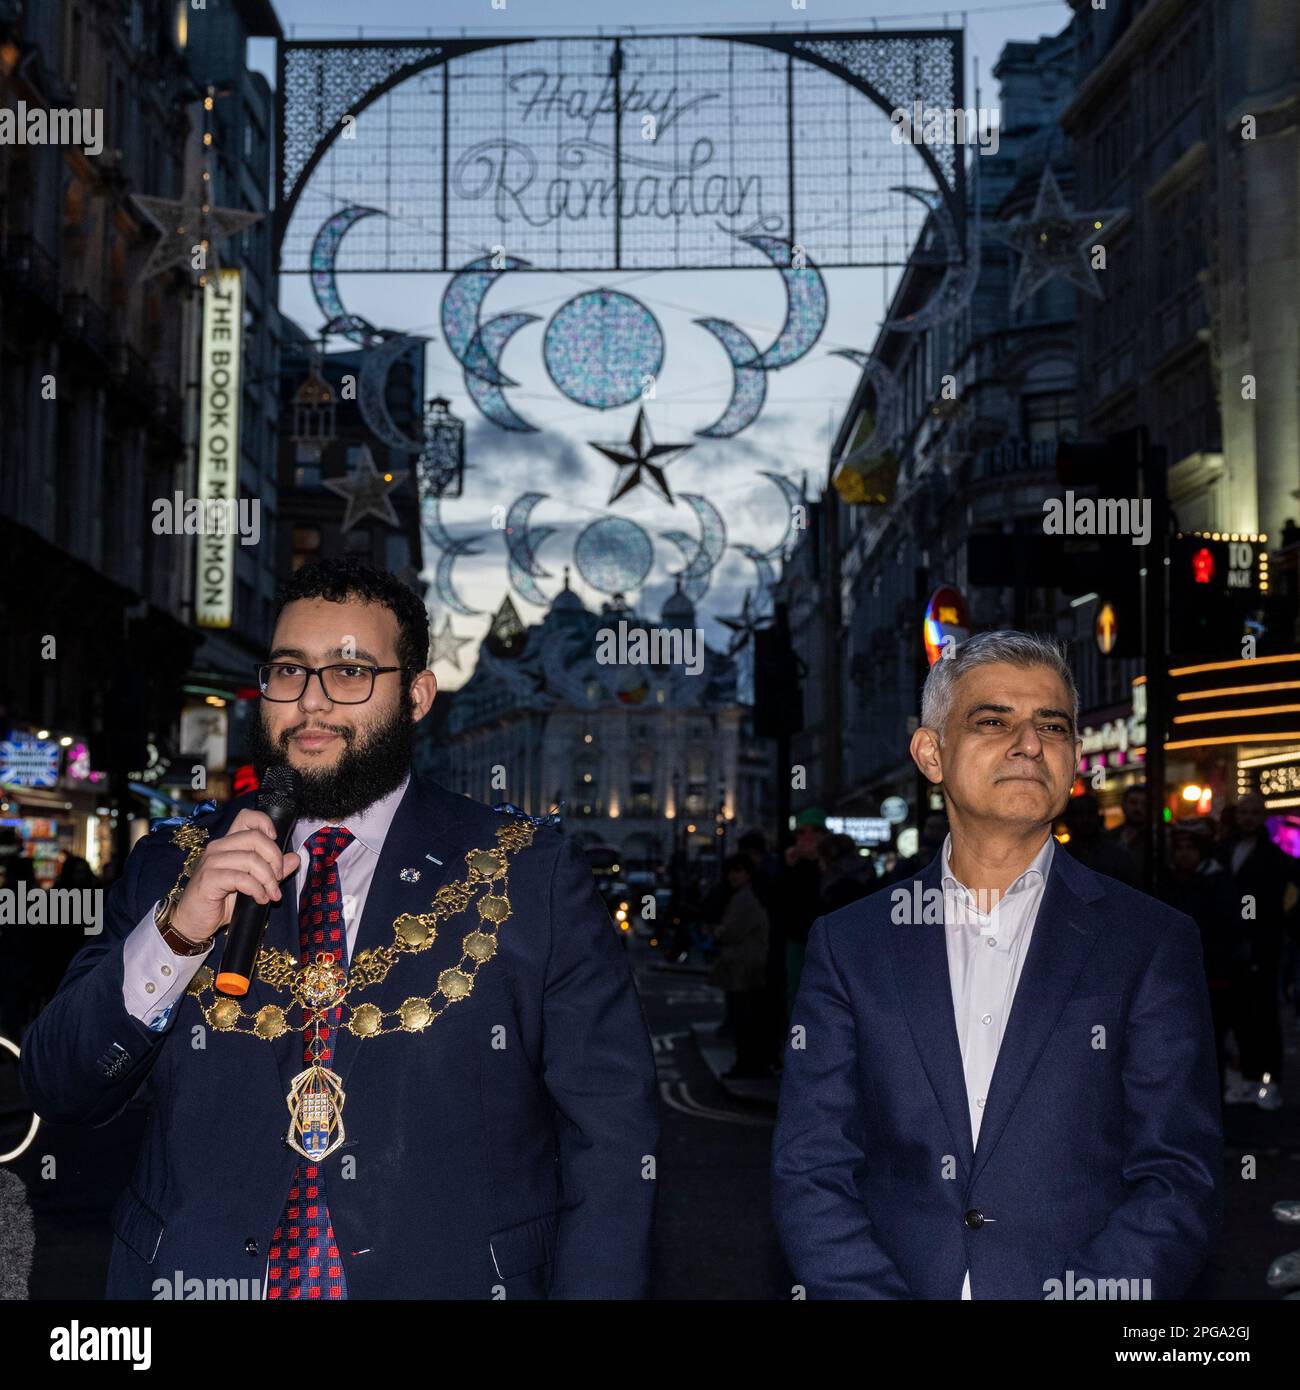 Londres, Royaume-Uni. 21 mars 2023. (L) le conseiller Hamza Taouzzale, Lord Mayor of Westminster, et Sadiq Khan, Maire de Londres, à l'entrée en fonction de la première installation de lumières du Ramadan à Piccadilly Circus à la veille du premier jour du Ramadan 2023. Les lumières de cette échelle sont une première au Royaume-Uni et en Europe, avec 30 000 lumières durables illuminées dans le centre de Londres pendant tout le mois du Ramadan. Credit: Stephen Chung / Alamy Live News Banque D'Images